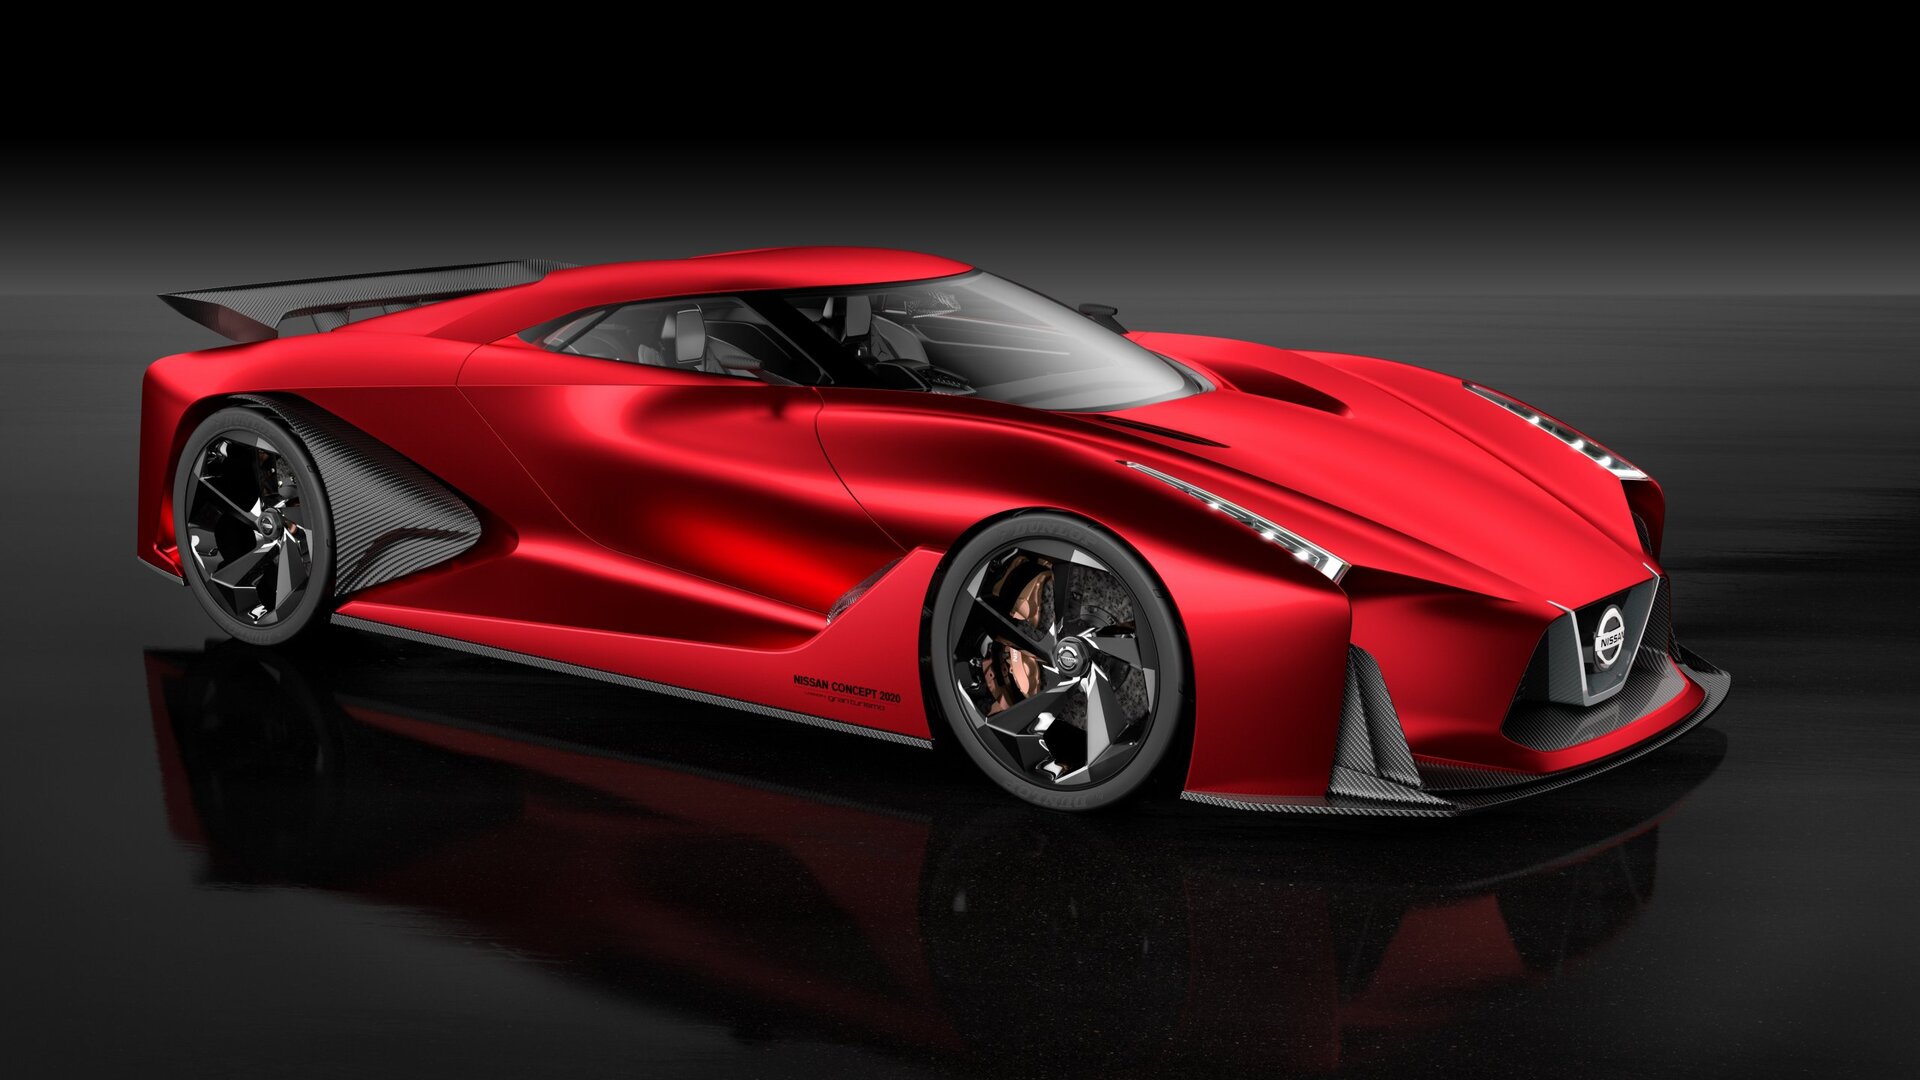 Nissan Concept 2020 Gran Turismo